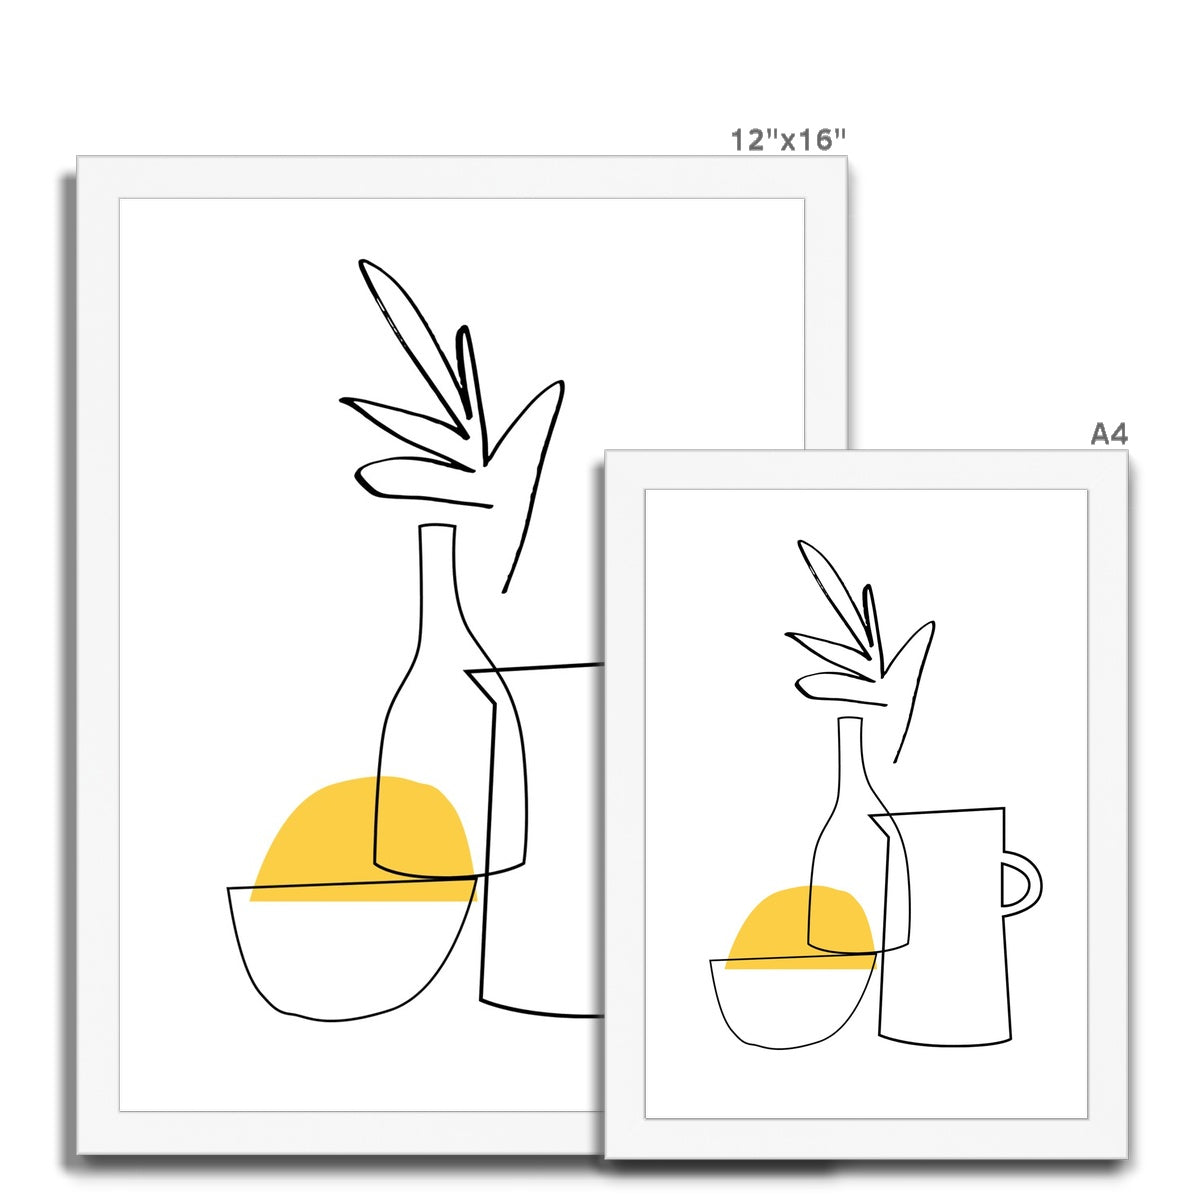 Lemon Framed Print